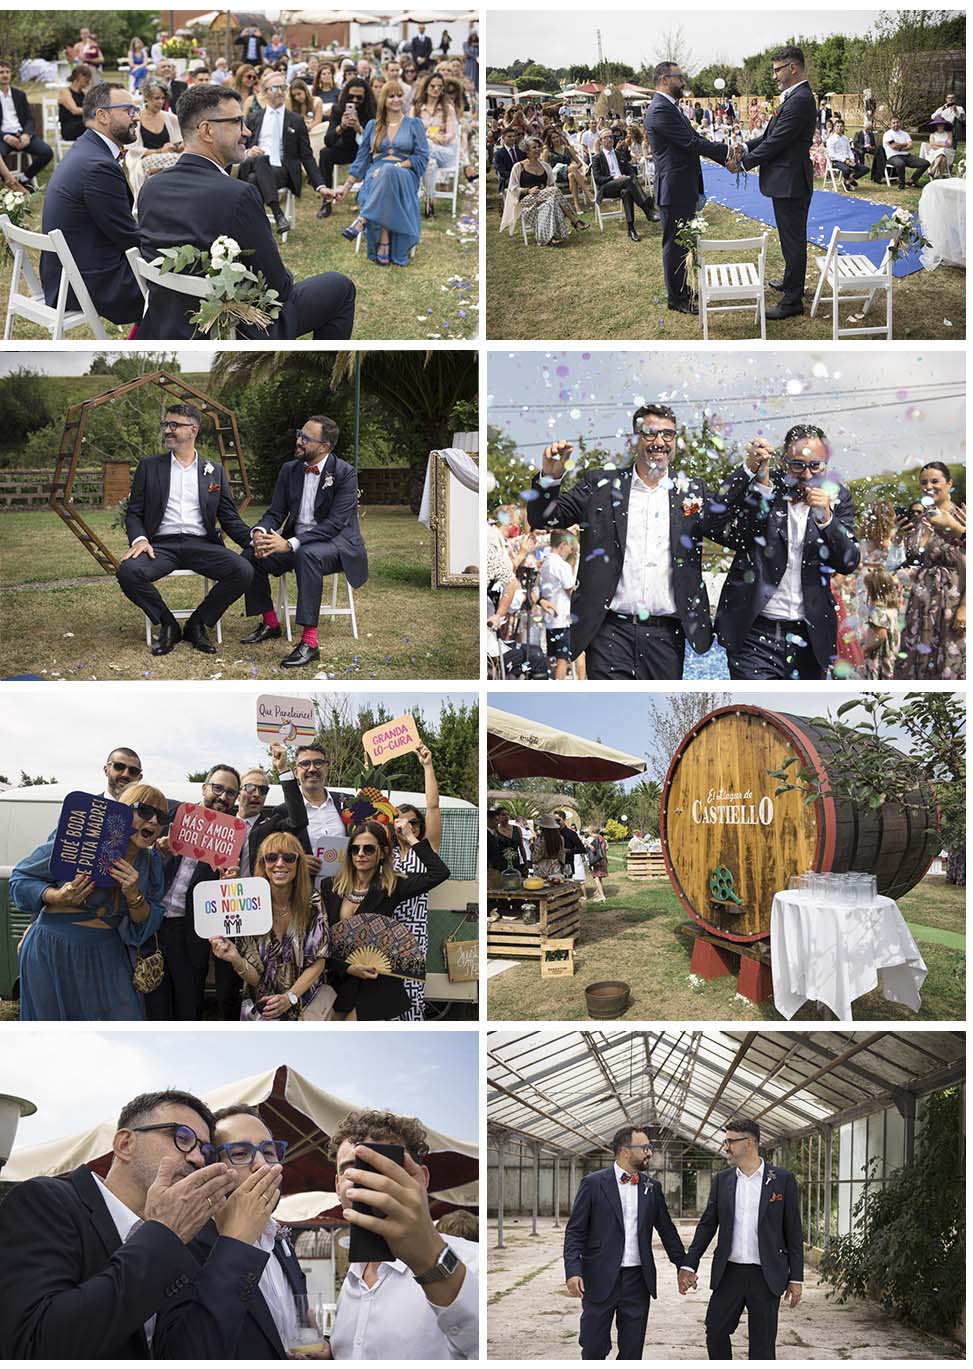 La boda de Israel & Santiago. Por toda una vida juntos. Fotógrafo de bodas en Asturias.